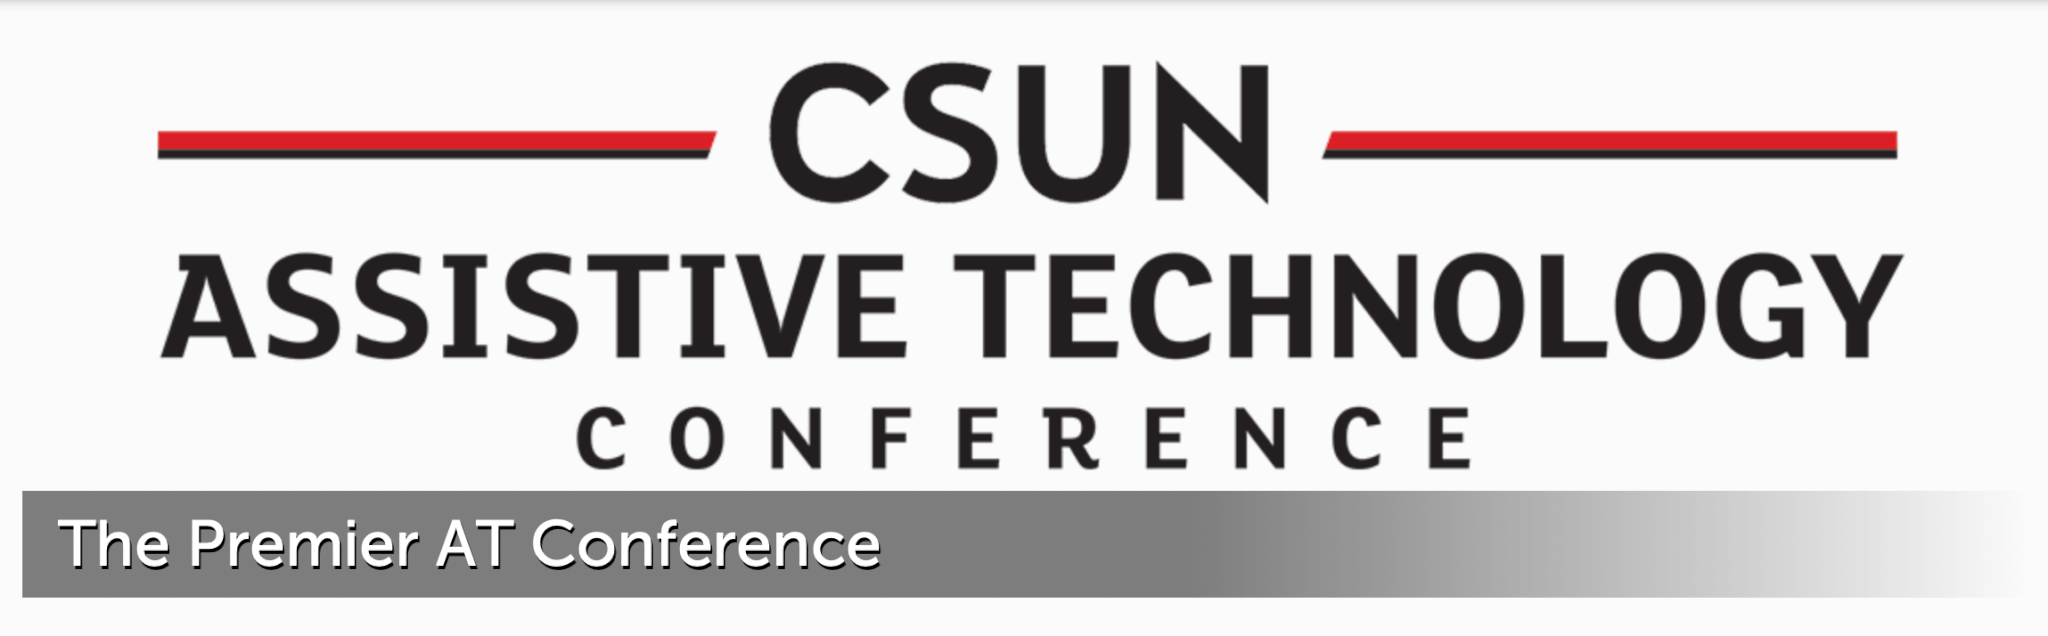 CSUN Assistive Technology Conference Logo